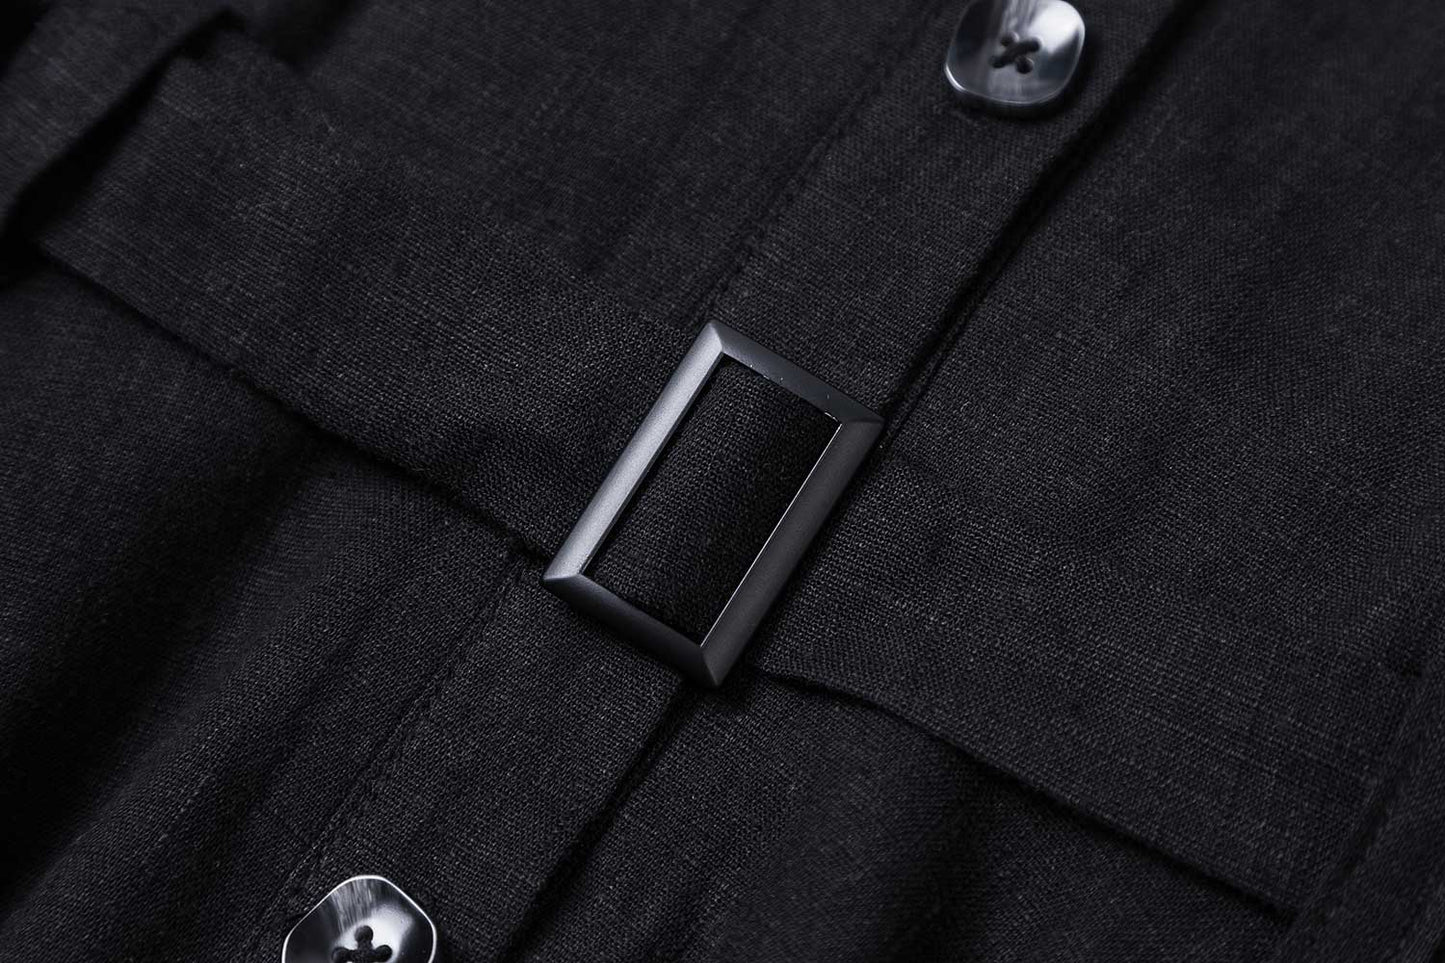 50s inspired swing shirt Dress in Black 2384#